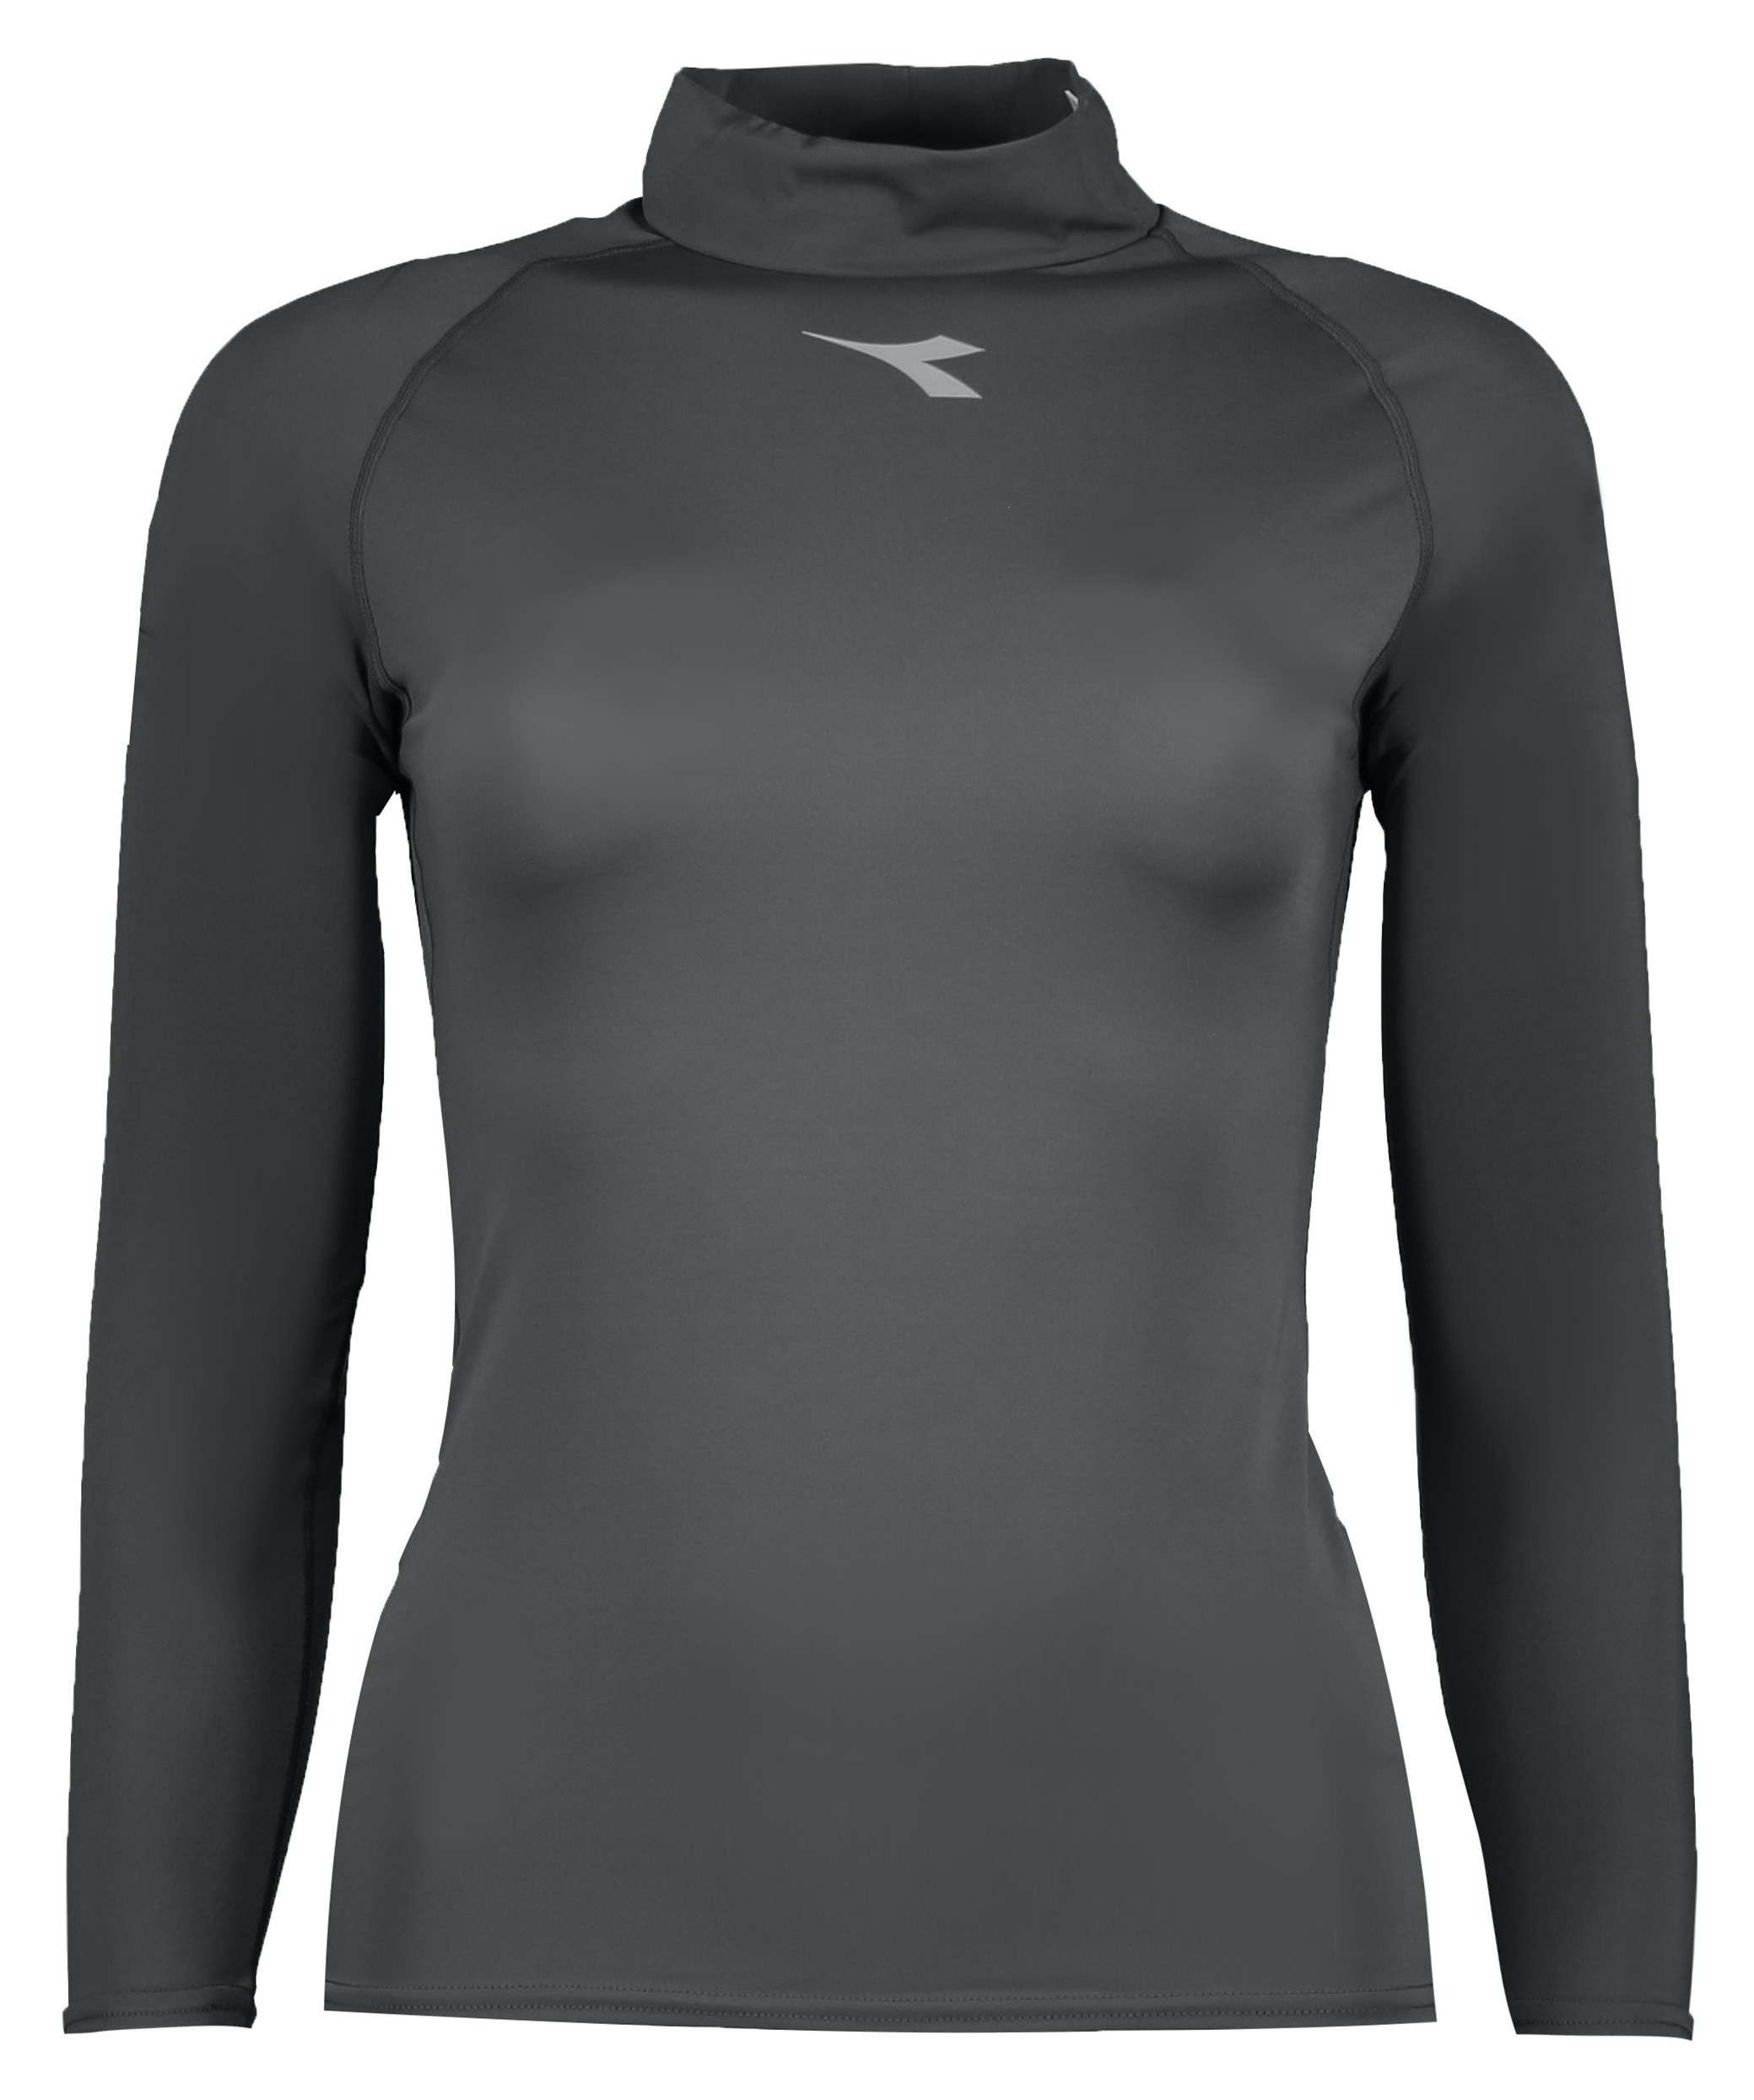 تی شرت ورزشی زنانه دیادورا مدل VSN-9504-GRY